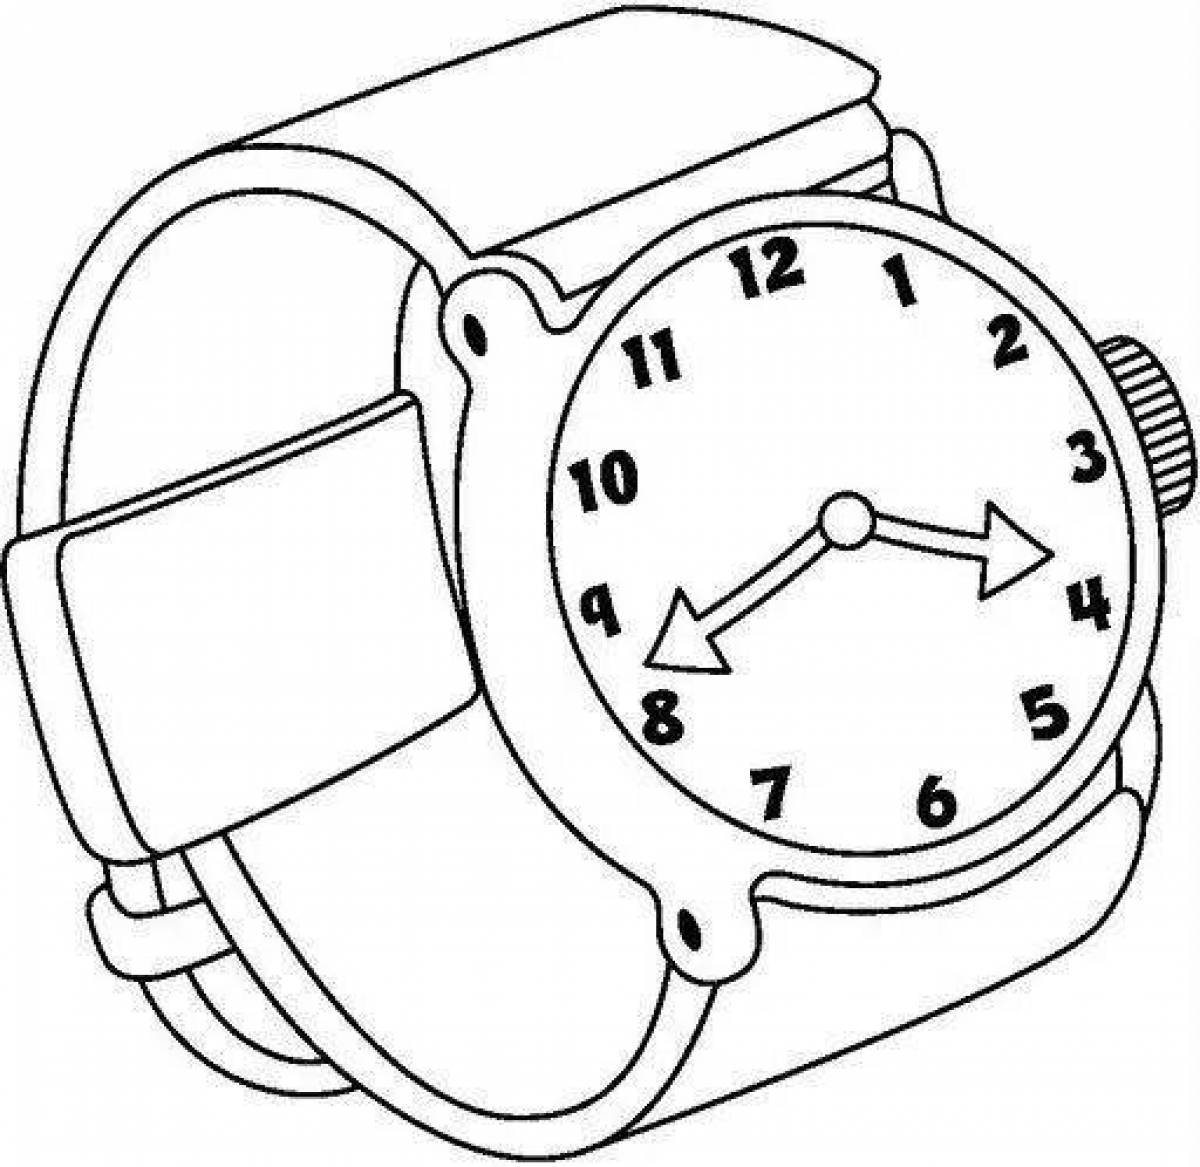 Раскраски часов для детей. Раскраска часы наручные. Часы раскраска для малышей. Часы раскраска для детей. Часы наручные раскраска для детей.